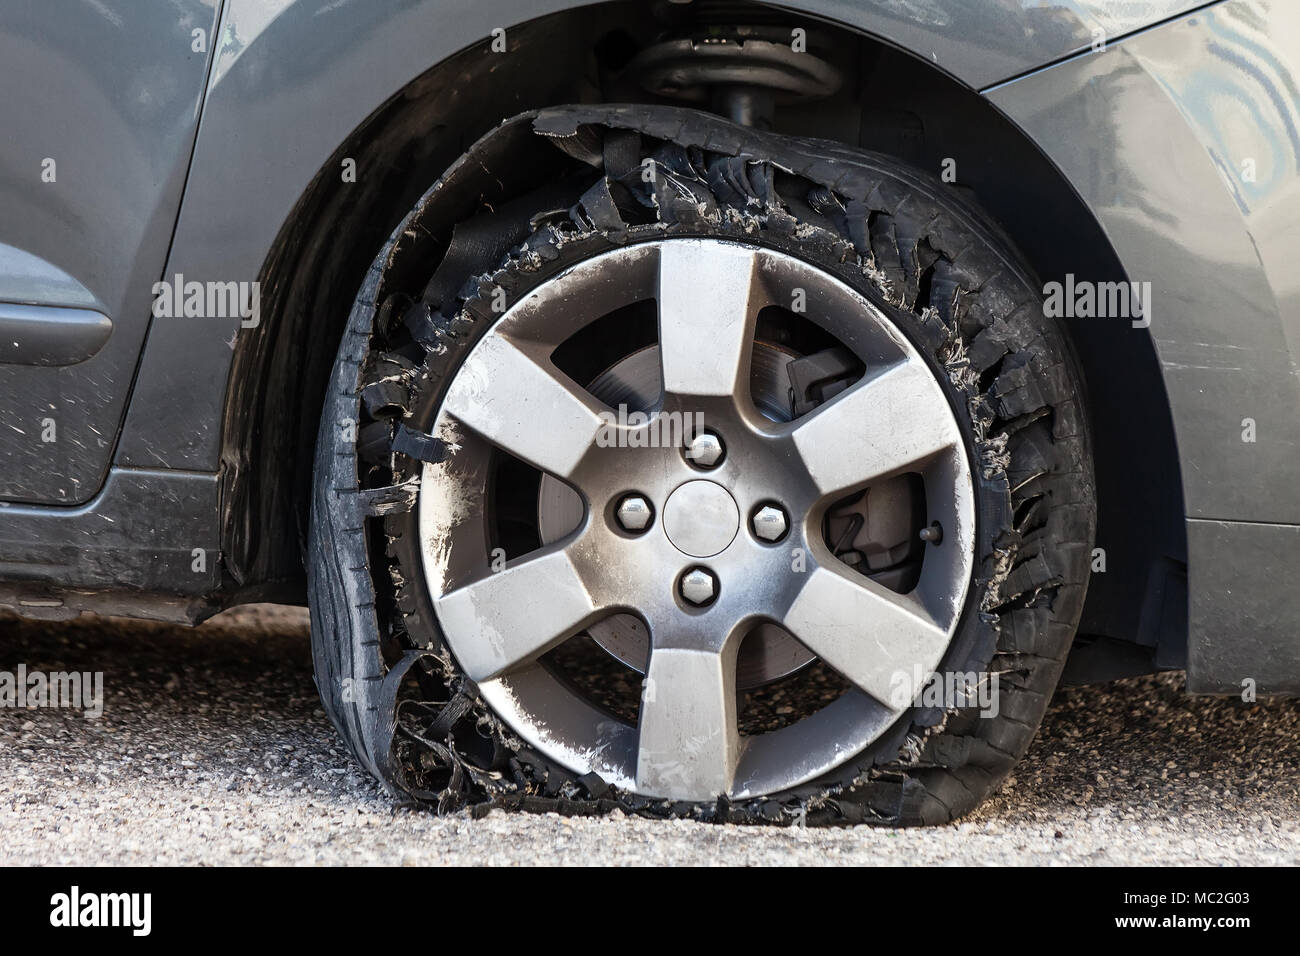 Sie zerstörte Reifen geblasen mit explodierte, geschreddert und beschädigte Gummi auf modernem SUV Automobil. Flache flache Reifen auf einer Leichtmetallfelge, riss öffnen Stockfoto